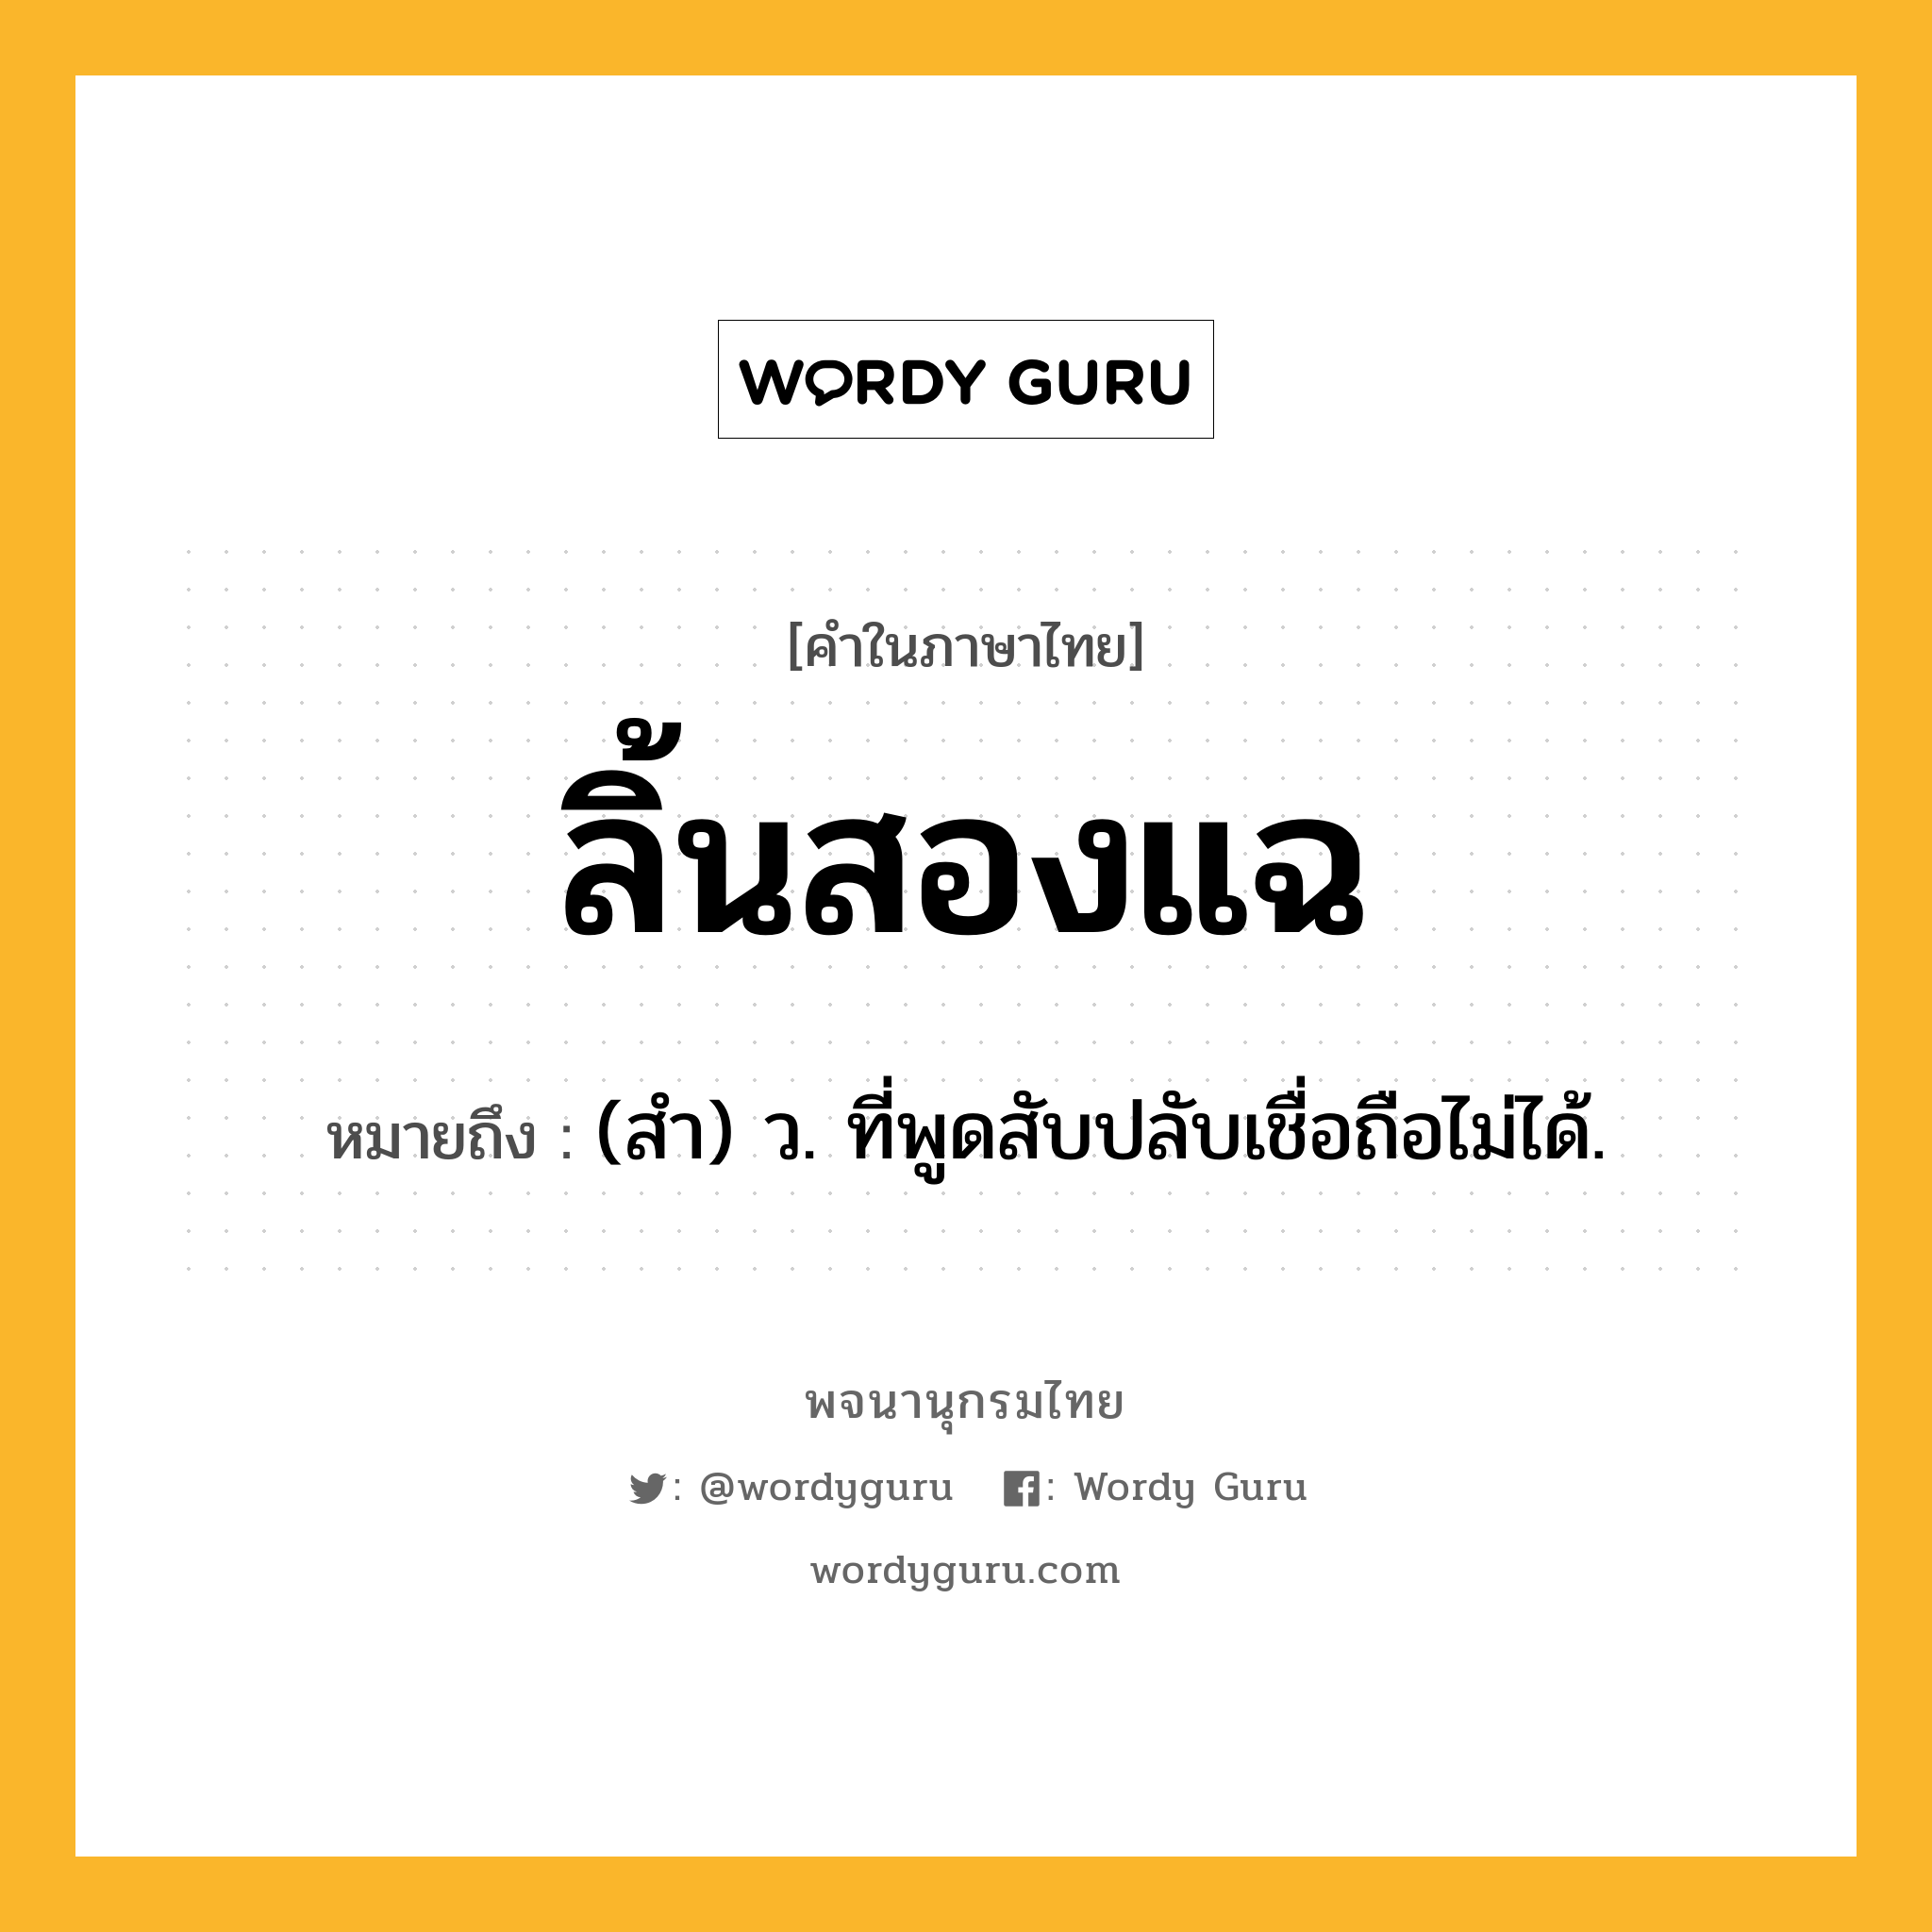 ลิ้นสองแฉ หมายถึงอะไร?, คำในภาษาไทย ลิ้นสองแฉ หมายถึง (สำ) ว. ที่พูดสับปลับเชื่อถือไม่ได้.